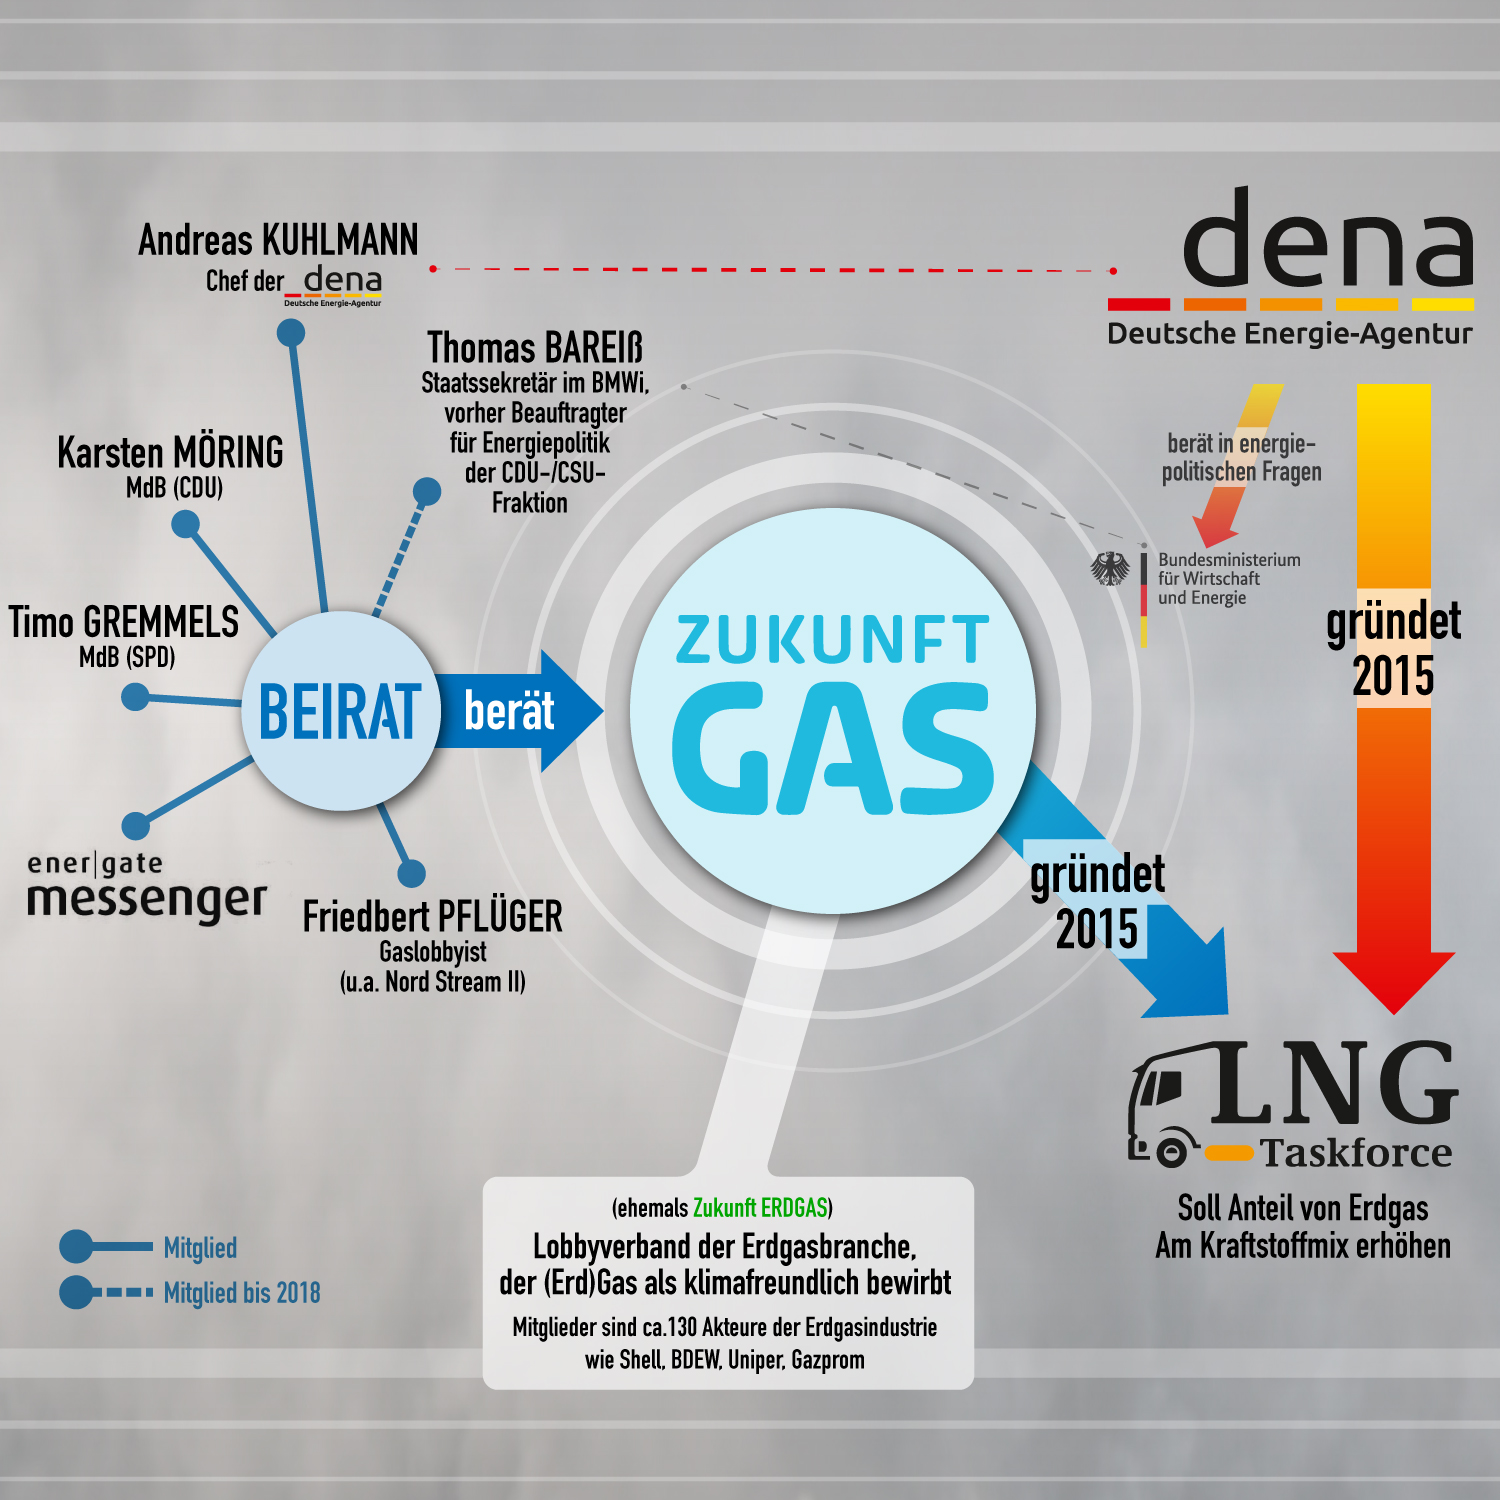 Flüssiggas kann laut Internationaler Energieagentur russisches Gas